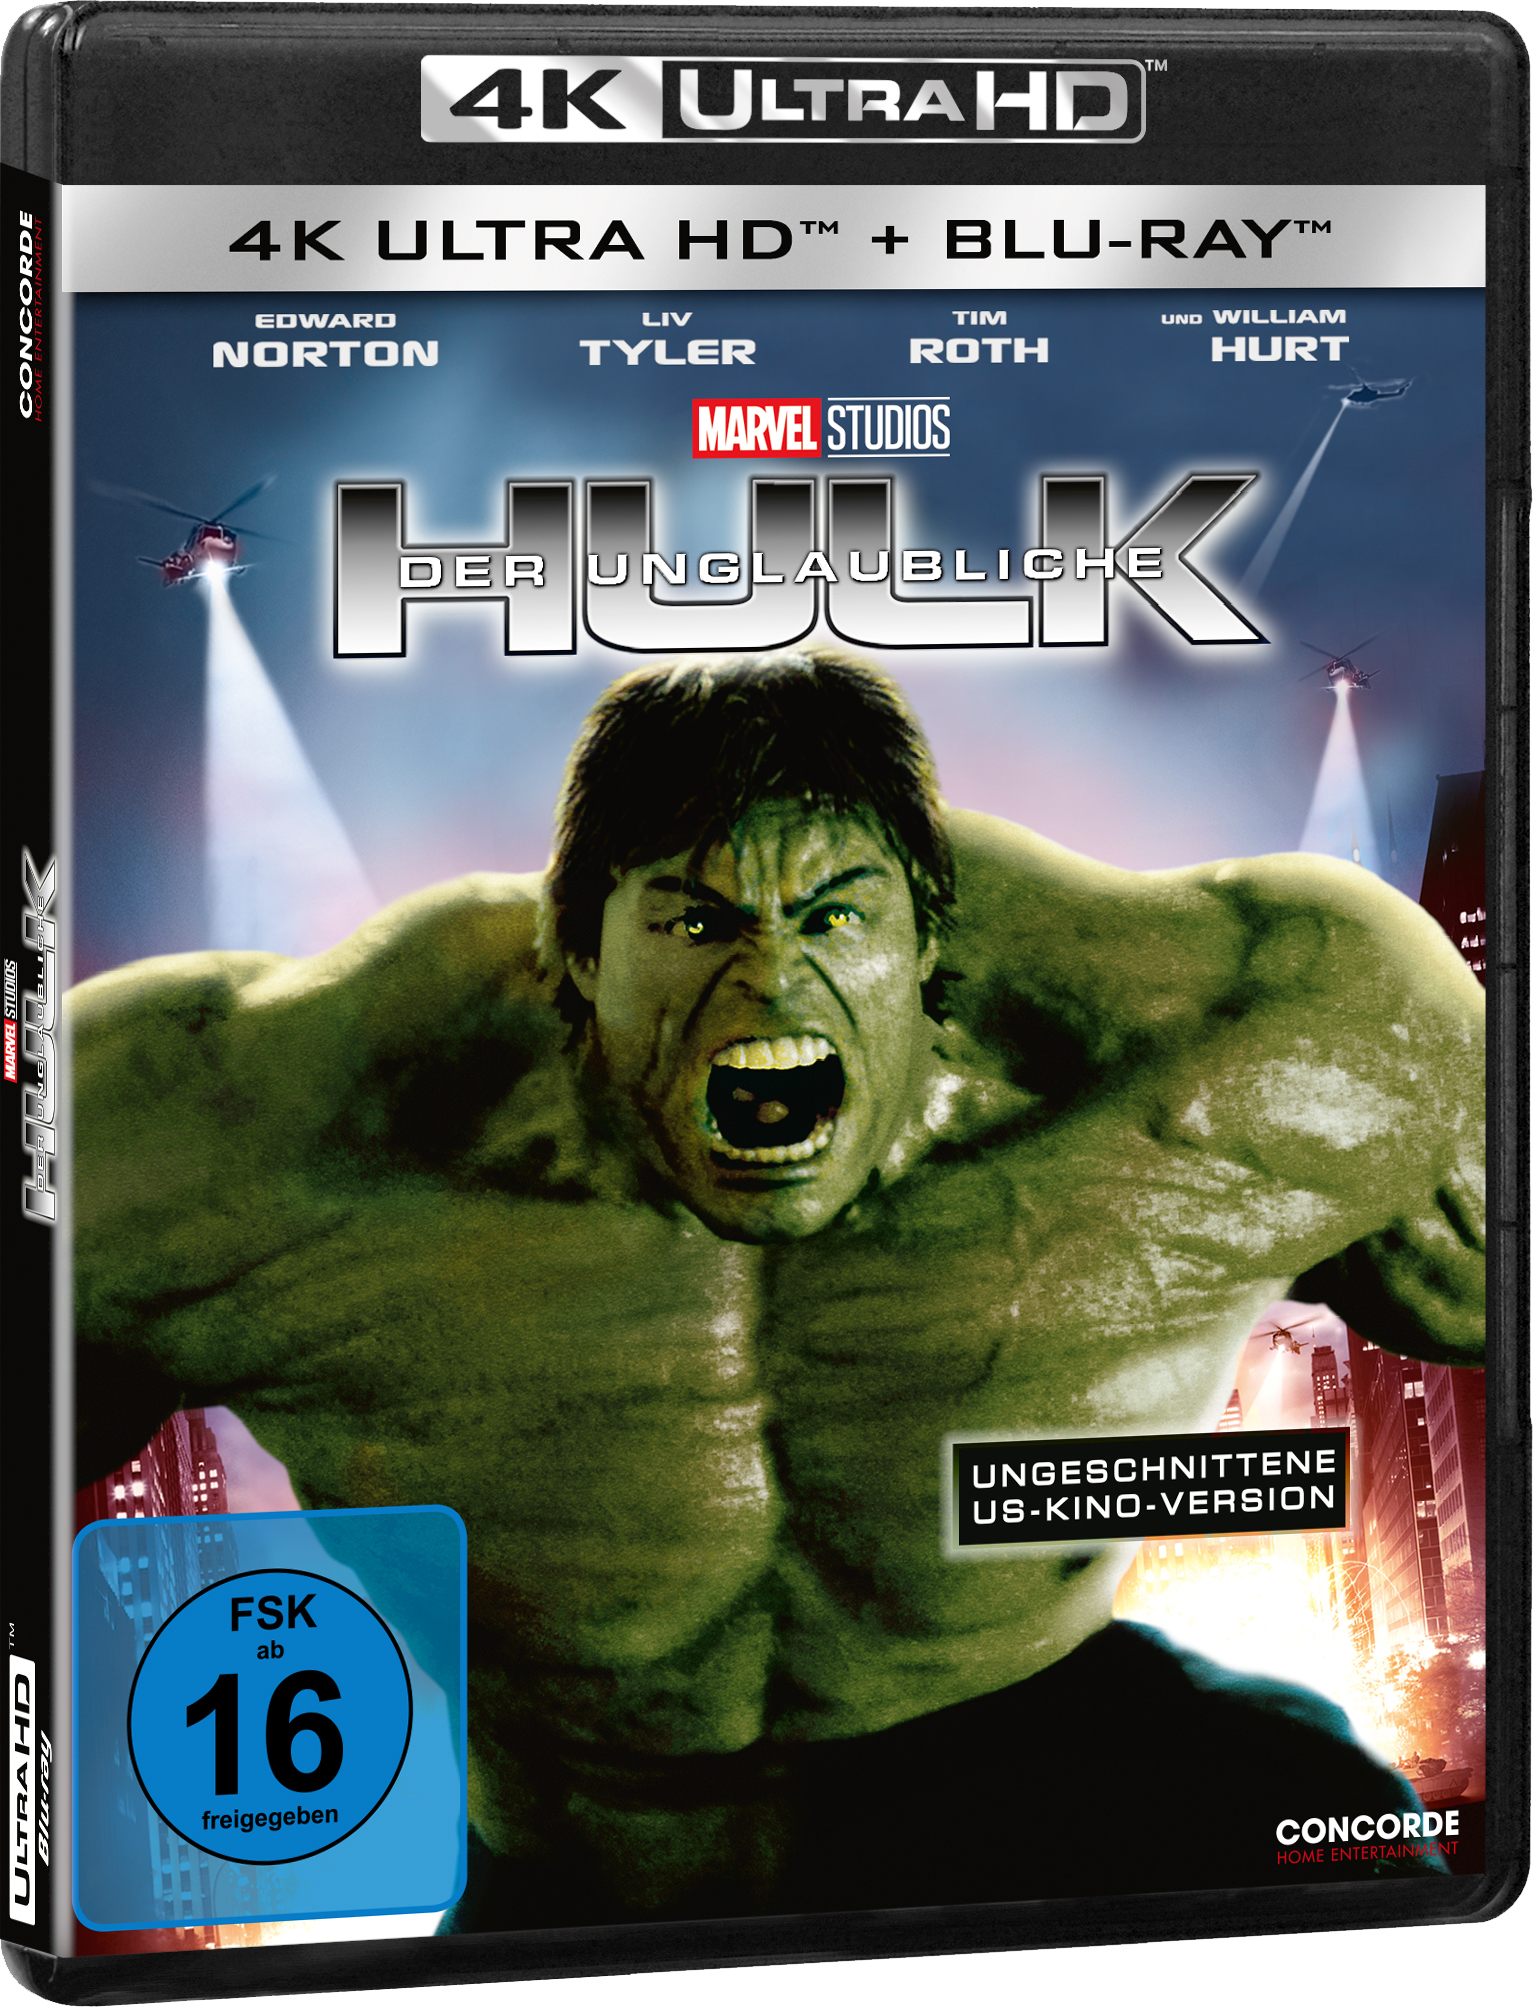 4K Blu-ray HD Unglaubliche (Ungeschnittene Blu-ray + Ultra Hulk Der Edition) Fassung/Special